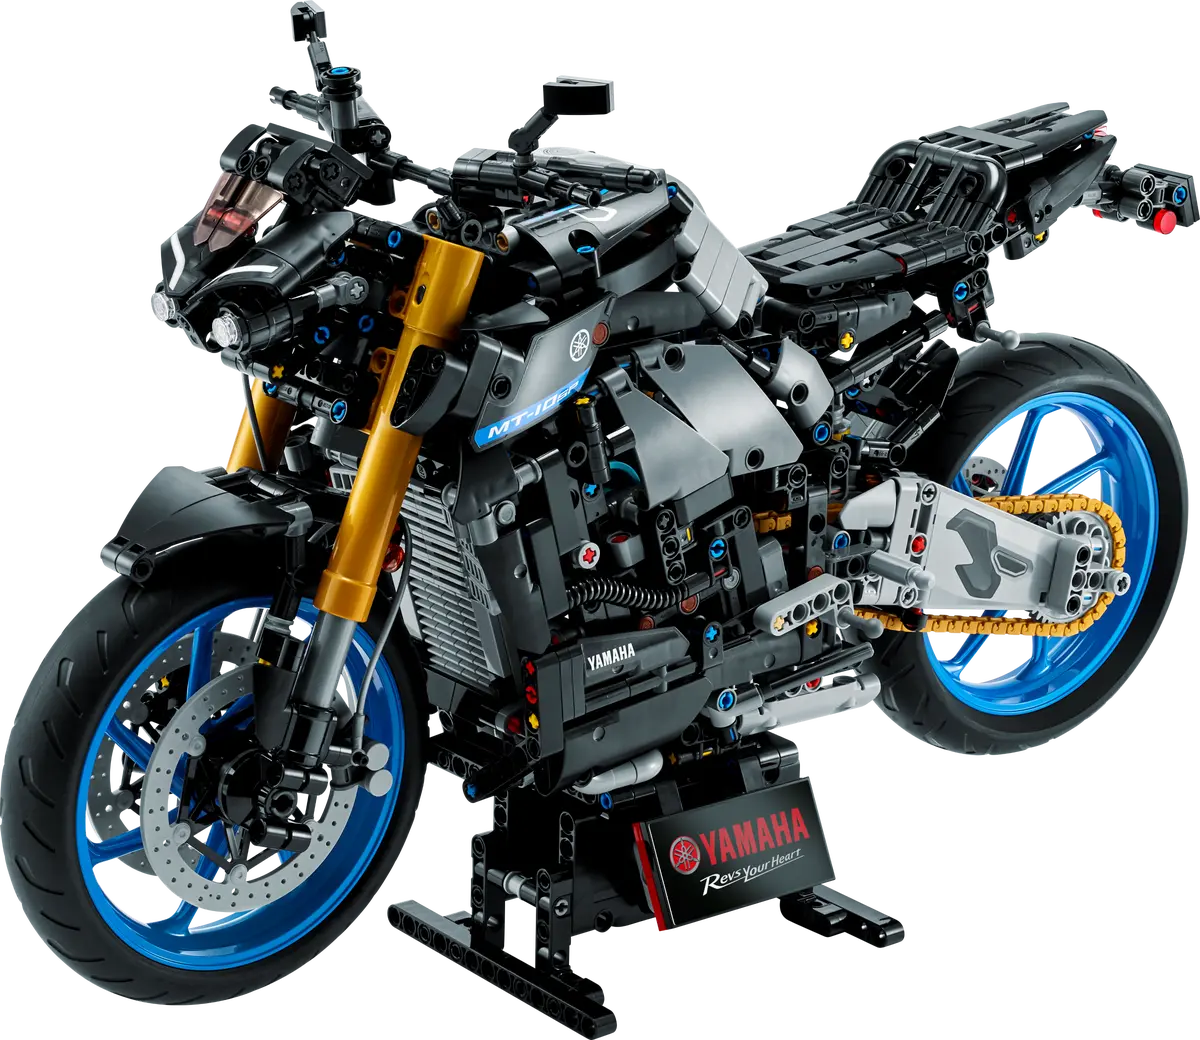 ヤマハのバイクが遂にレゴ®ブロックに初登場！“The king of MT”の名をいただく「MT-10 SP」をレゴで完全再現！